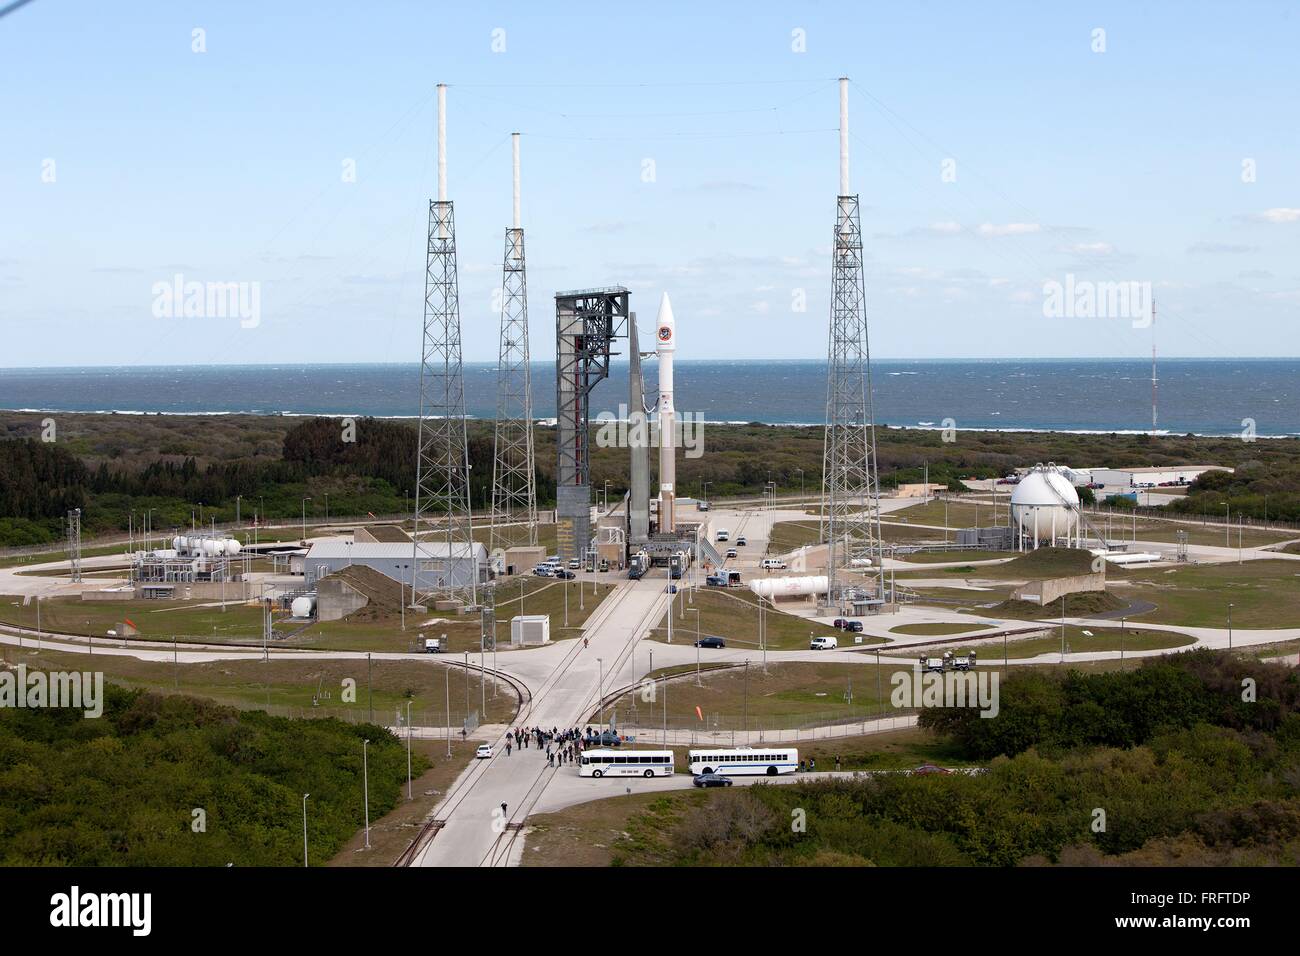 Il Cygnus OA-6 navicella spaziale sul regno lancio Alleanza Atlas V rocket è posizionato per il lancio a Space Launch Complex 41 presso il Kennedy Space Center Marzo 21, 2016 a Cape Canaveral, in Florida. Il Cygnus Il Cygnus è prevista per il lancio a marzo 22 per fornire hardware e materiali di consumo per la Stazione Spaziale Internazionale. Foto Stock